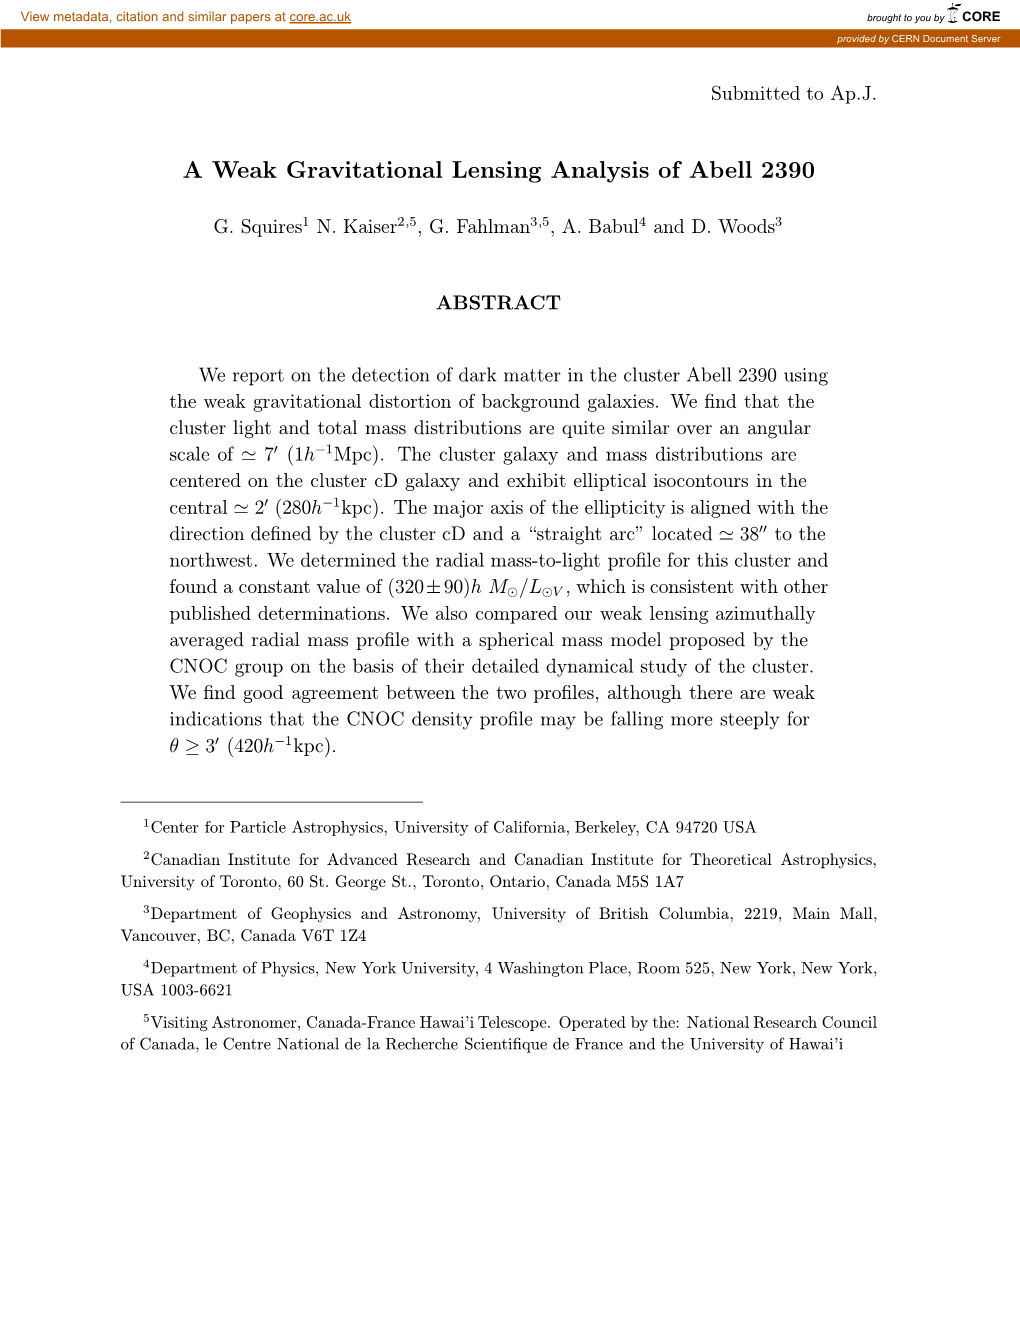 A Weak Gravitational Lensing Analysis of Abell 2390